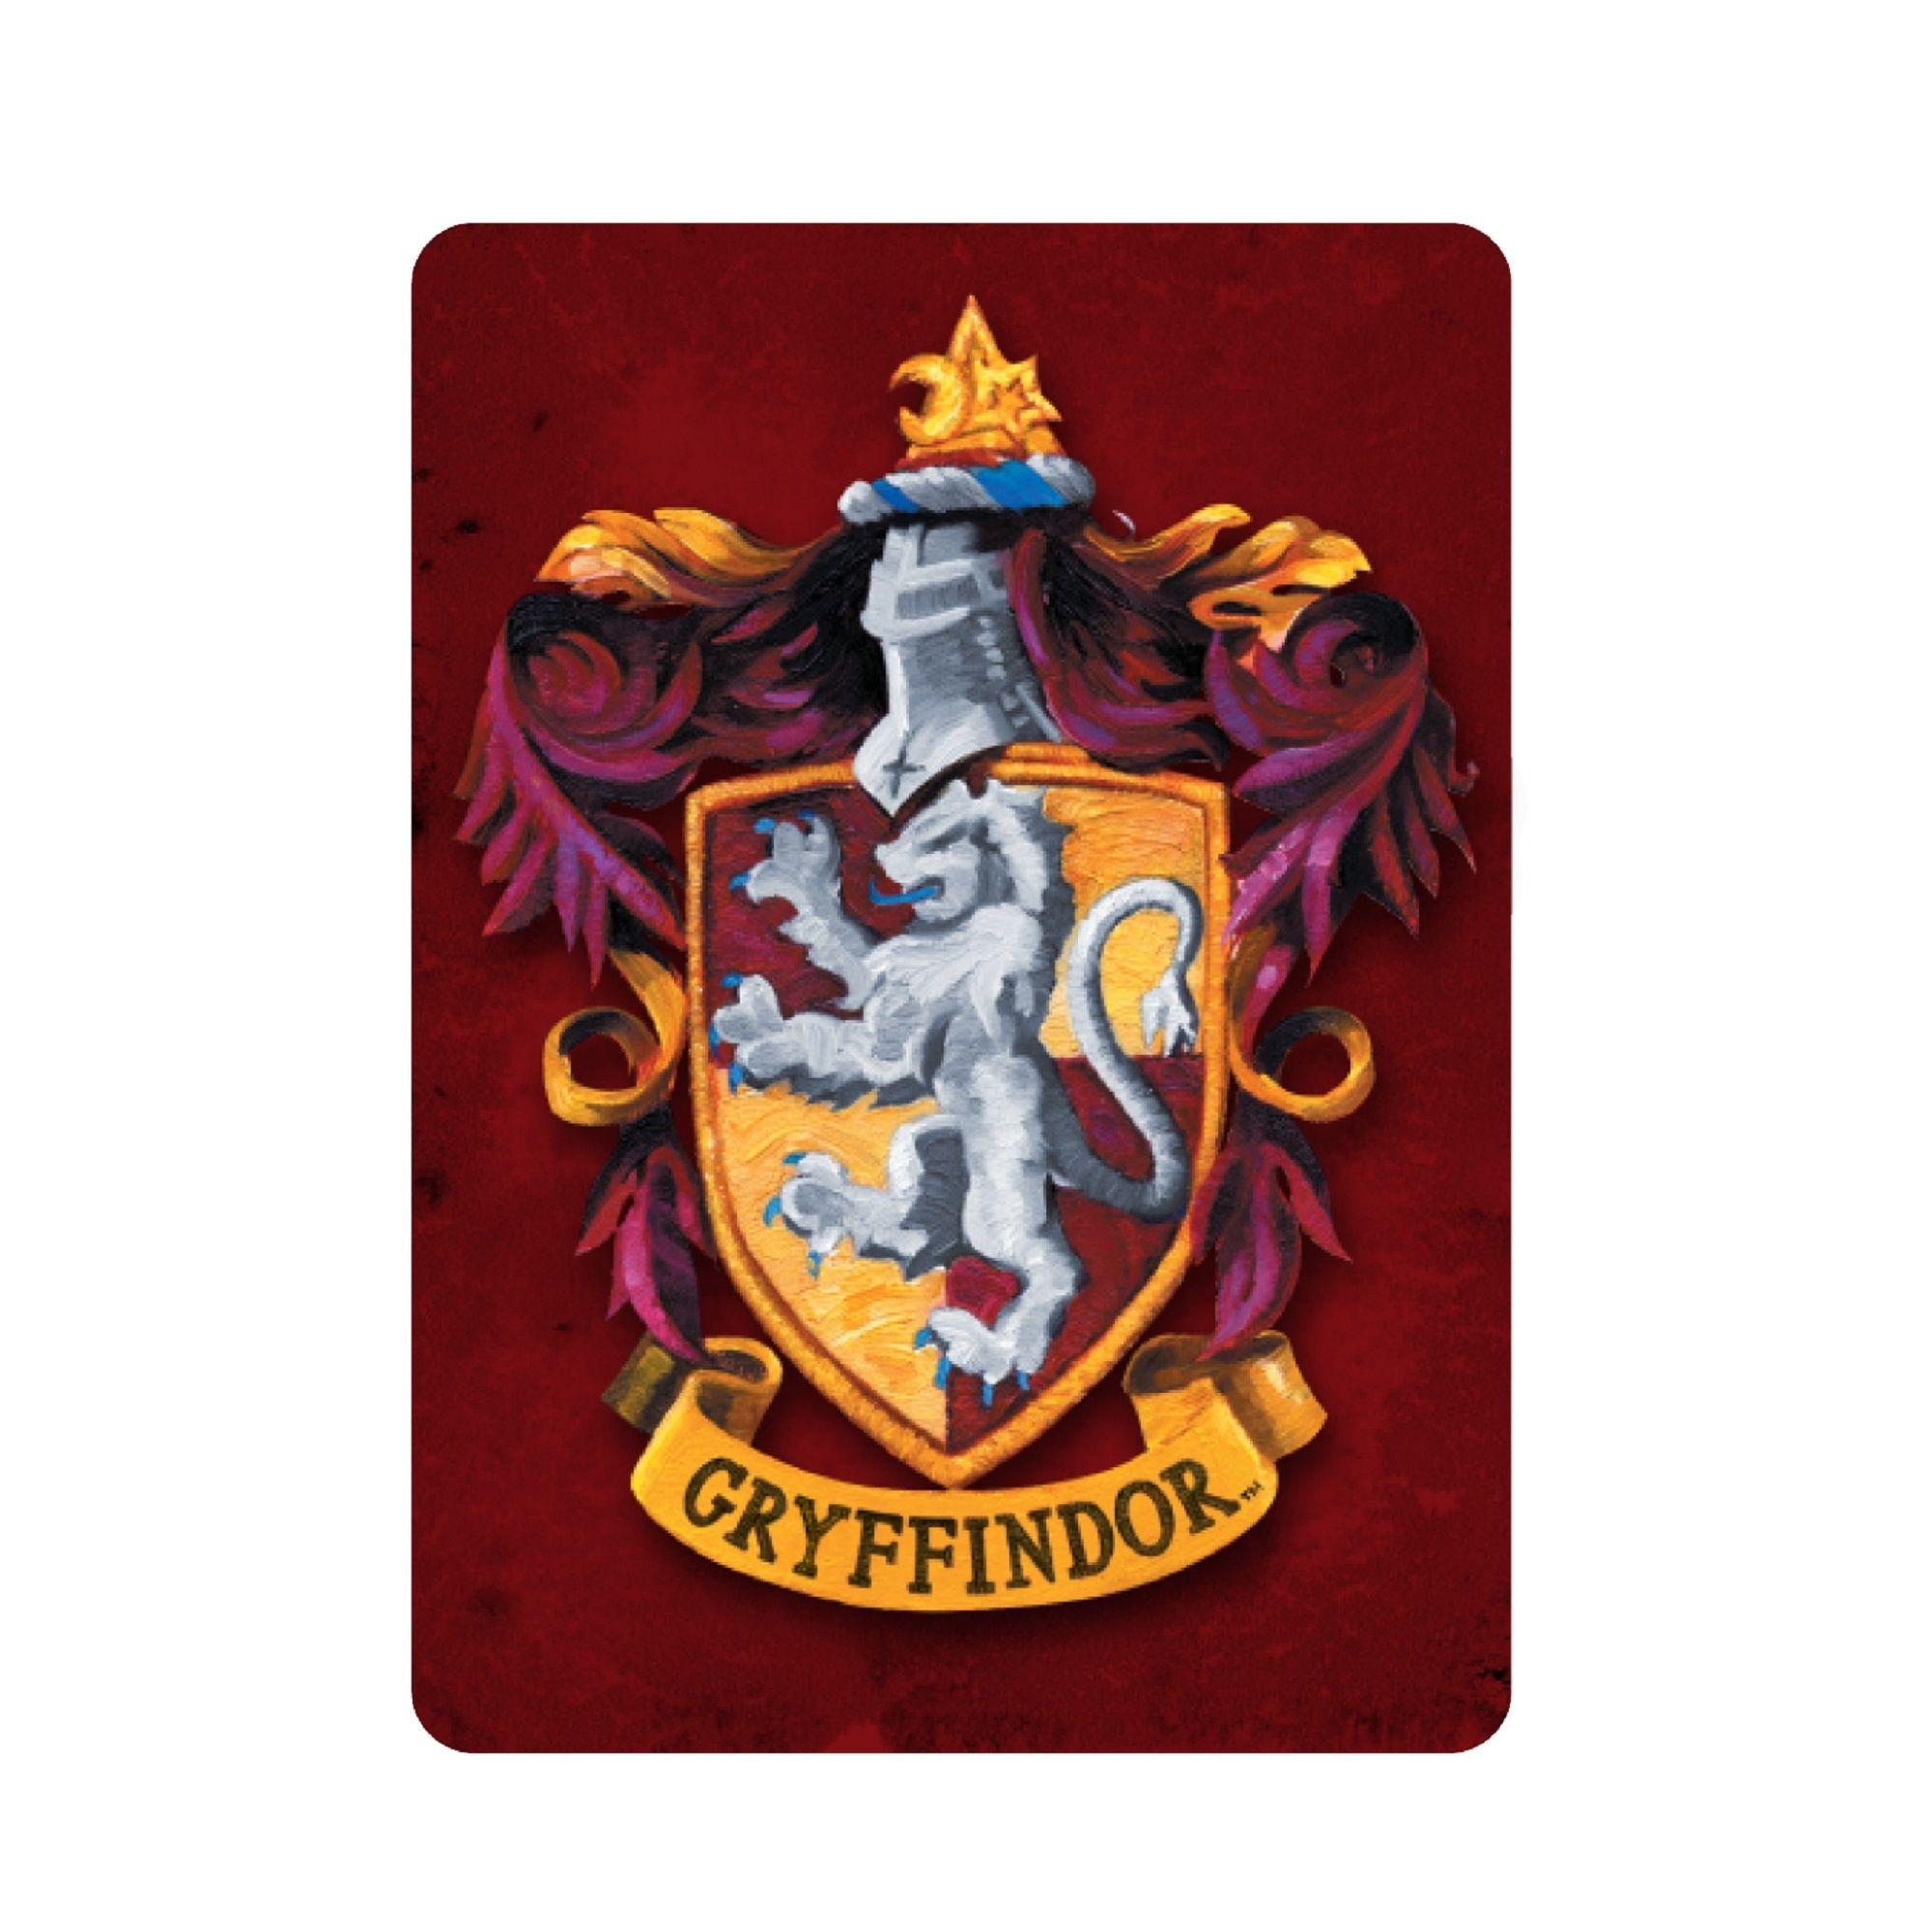 Harry Potter Gryffindor Logo - Harry Potter Gryffindor Crest Metal Magnet - £5.00 - Hamleys for Toys ...